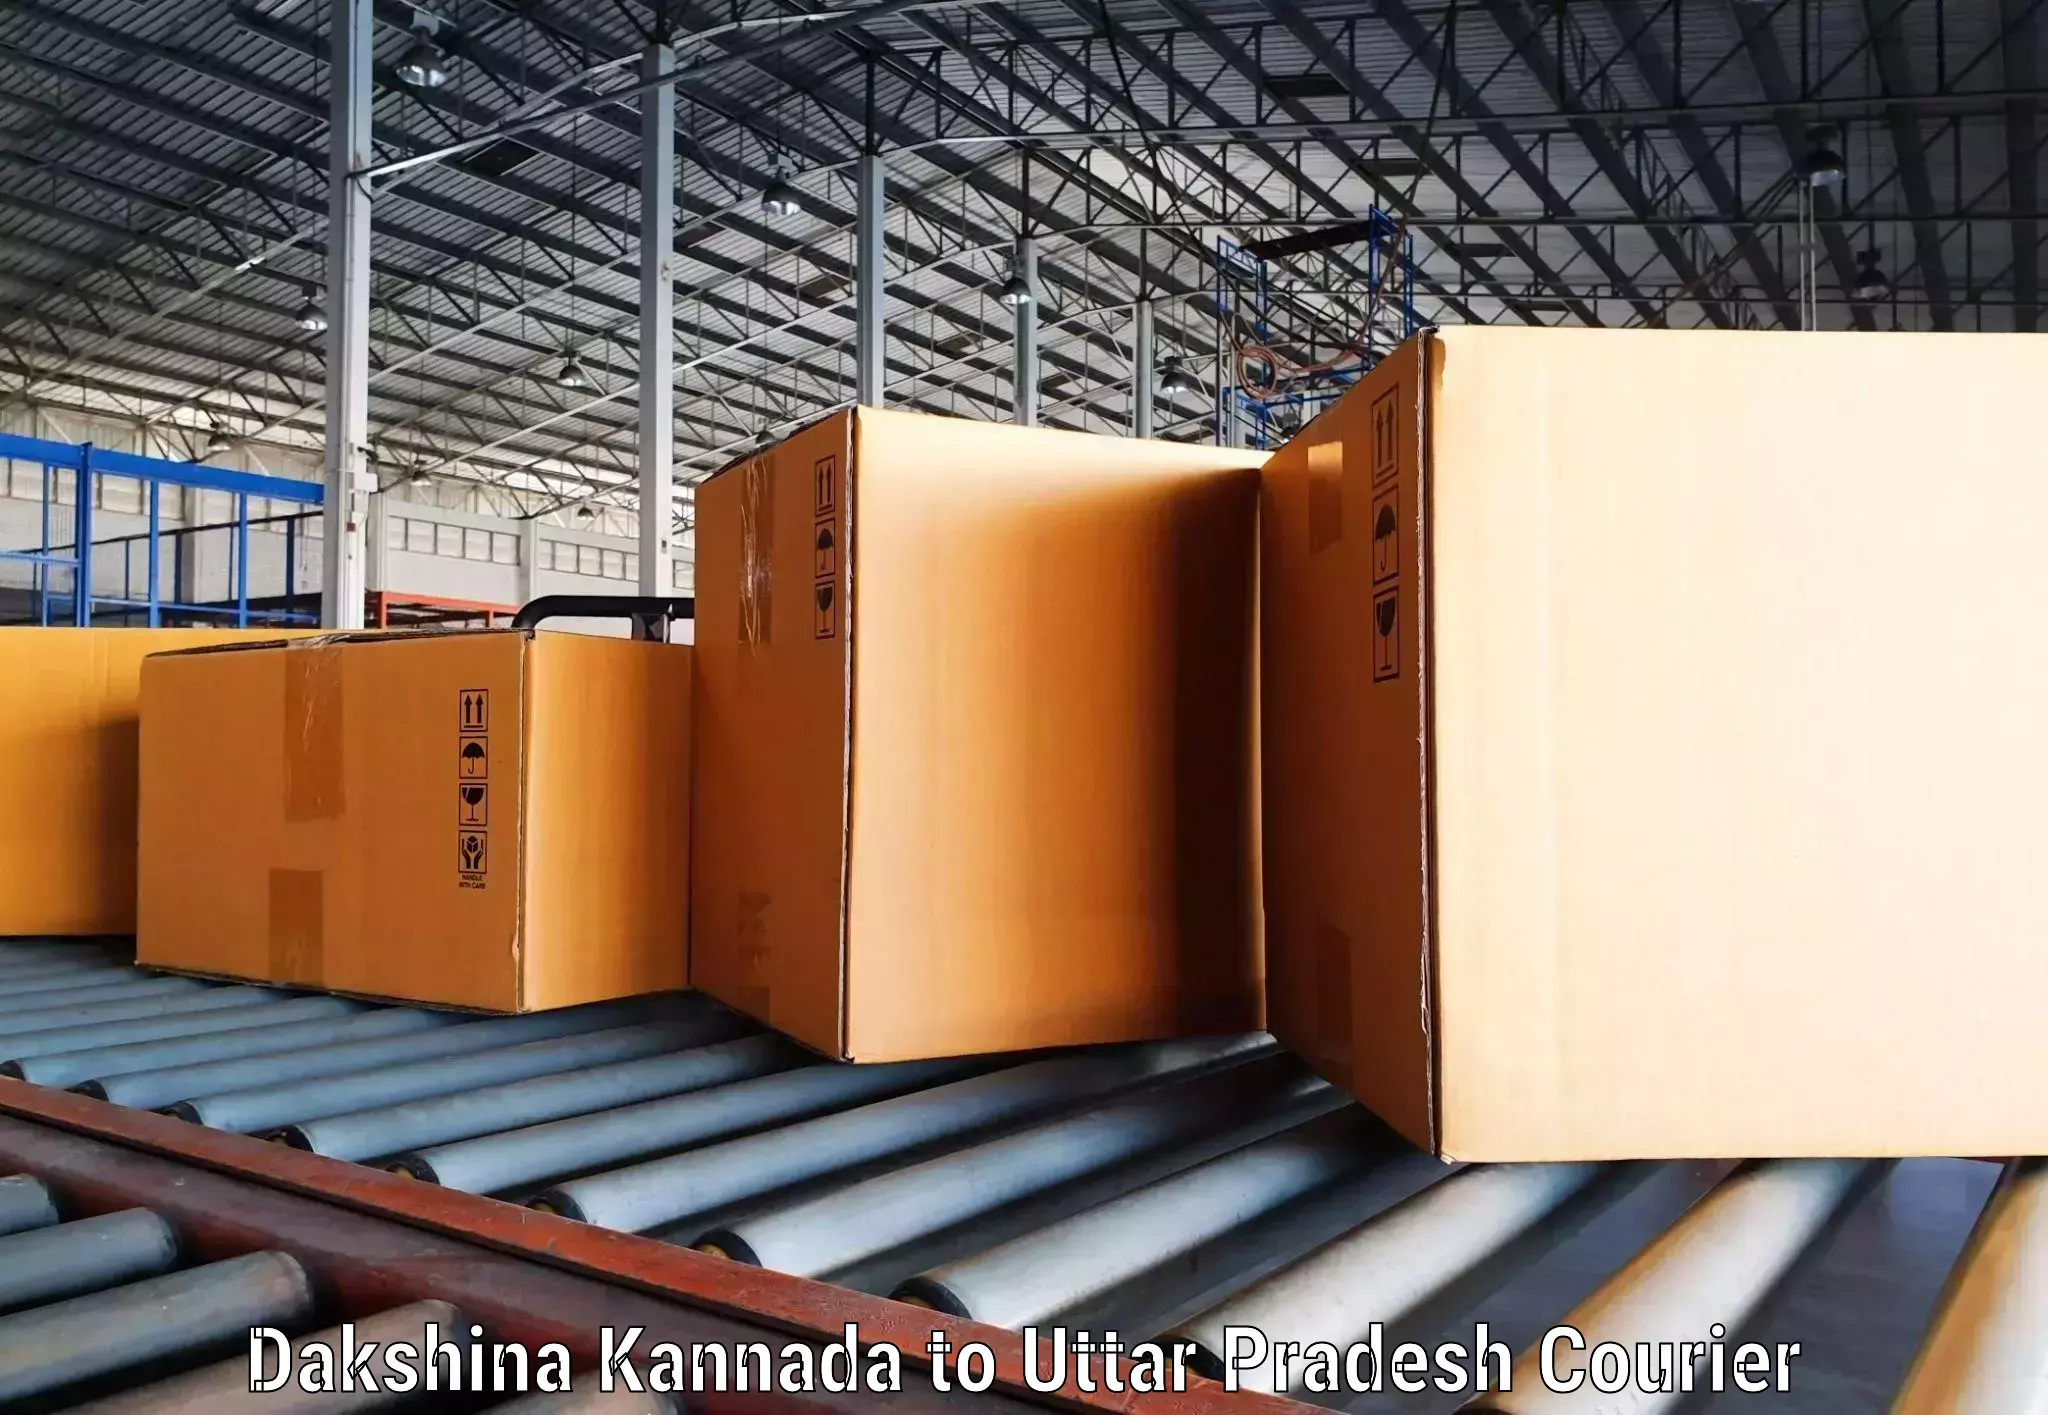 Custom courier packaging Dakshina Kannada to Aunrihar